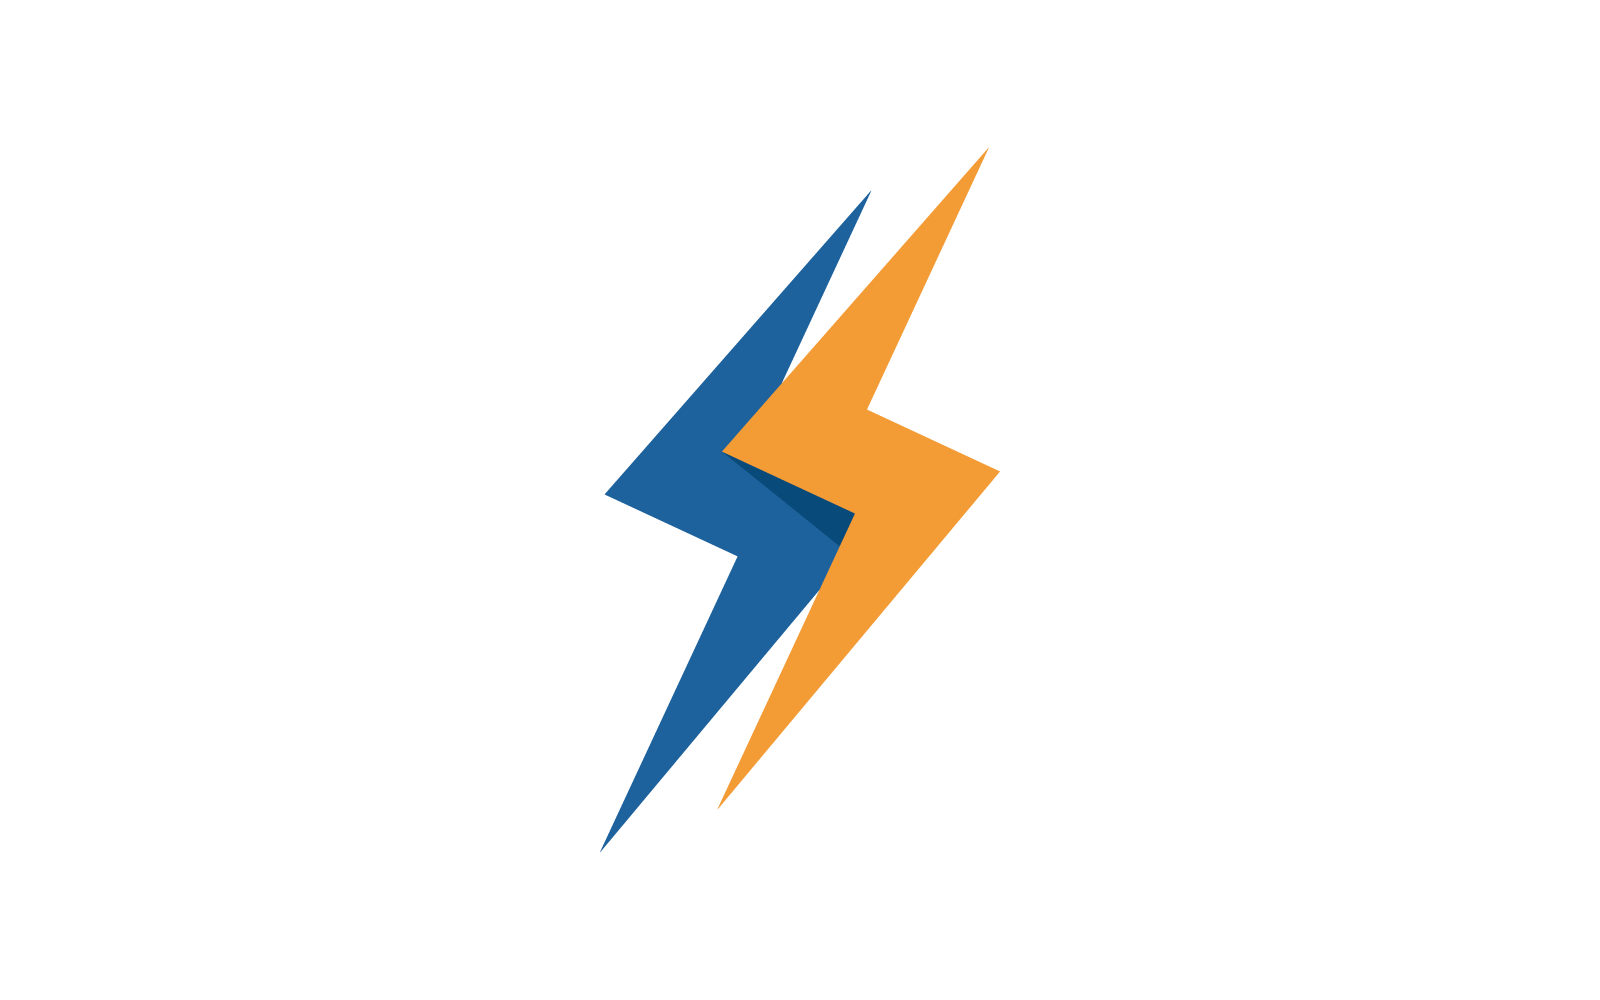 Power lightning power energy illustration vector logo template